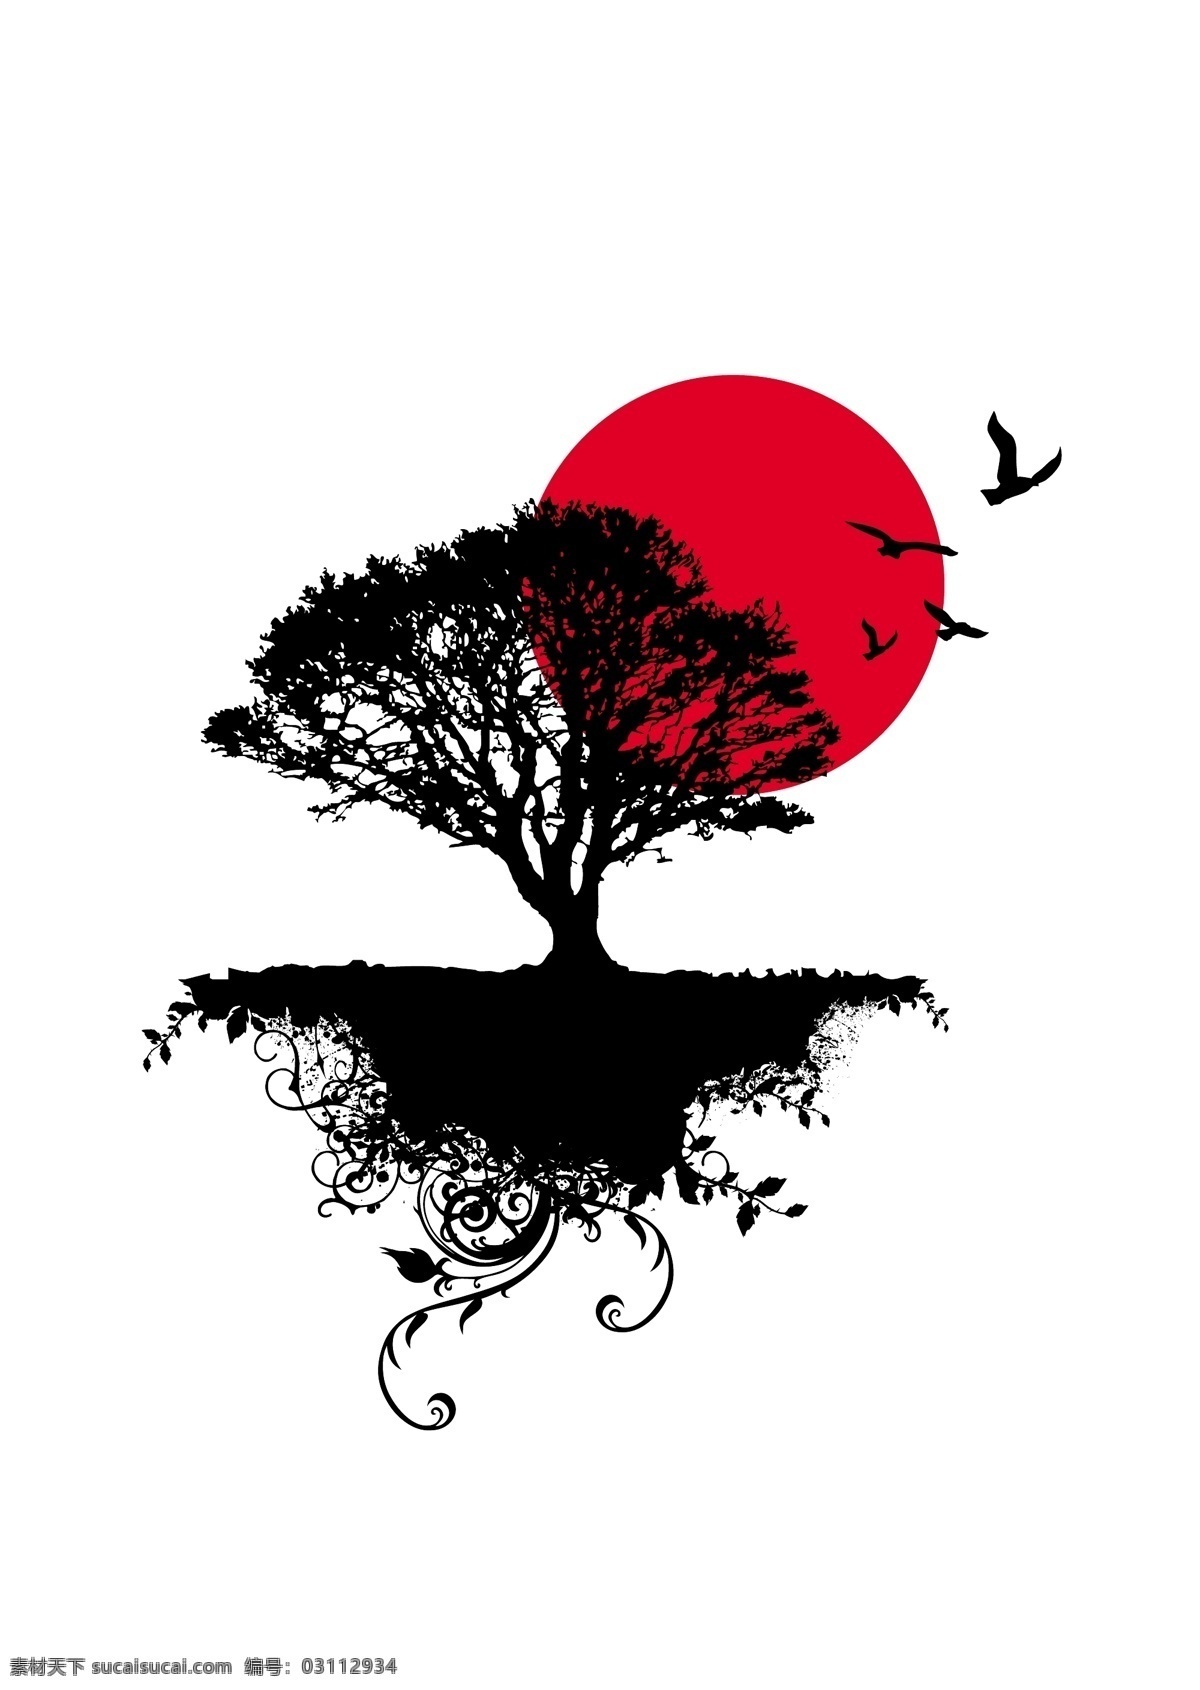 夕阳 映 树 广告 韩国 欧美 平面 黑树 矢量 矢量图 花纹花边